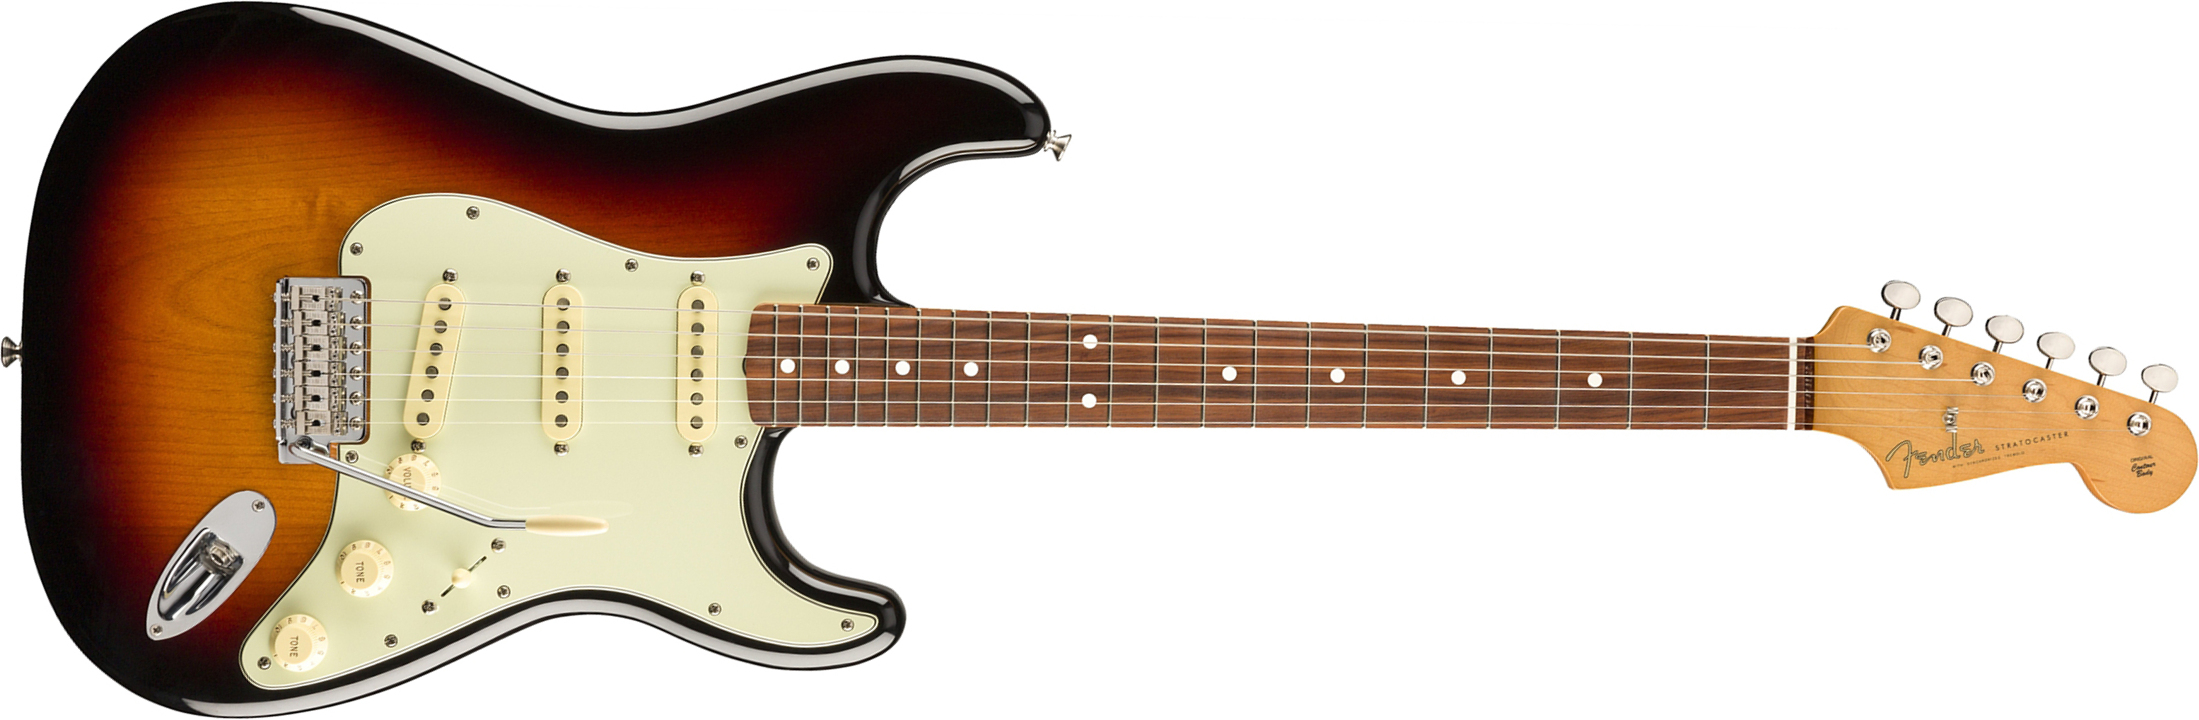 Fender Strat 60s Vintera Vintage Mex Pf - 3-color Sunburst - Elektrische gitaar in Str-vorm - Main picture